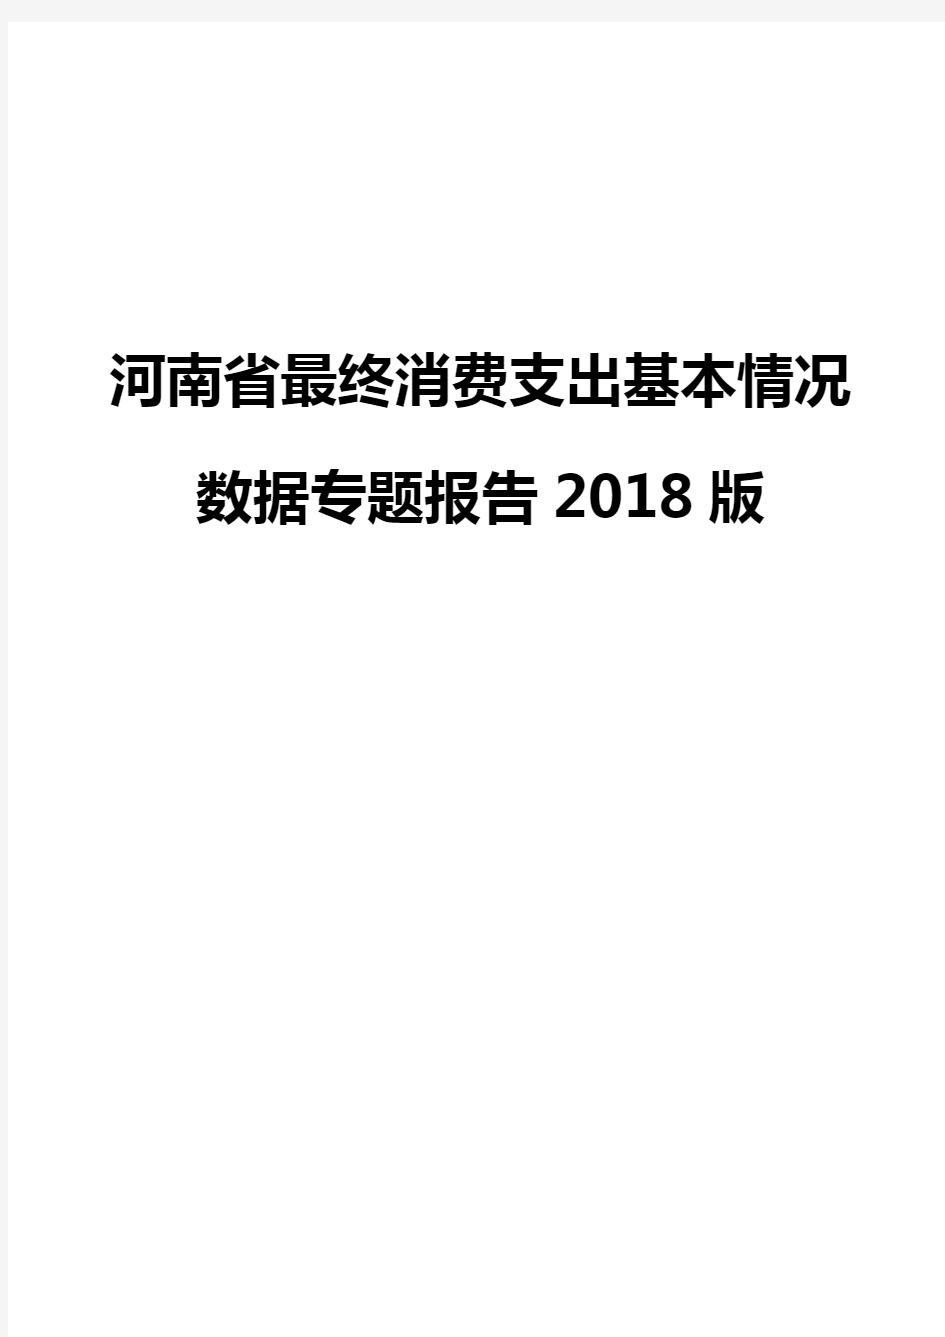 河南省最终消费支出基本情况数据专题报告2018版